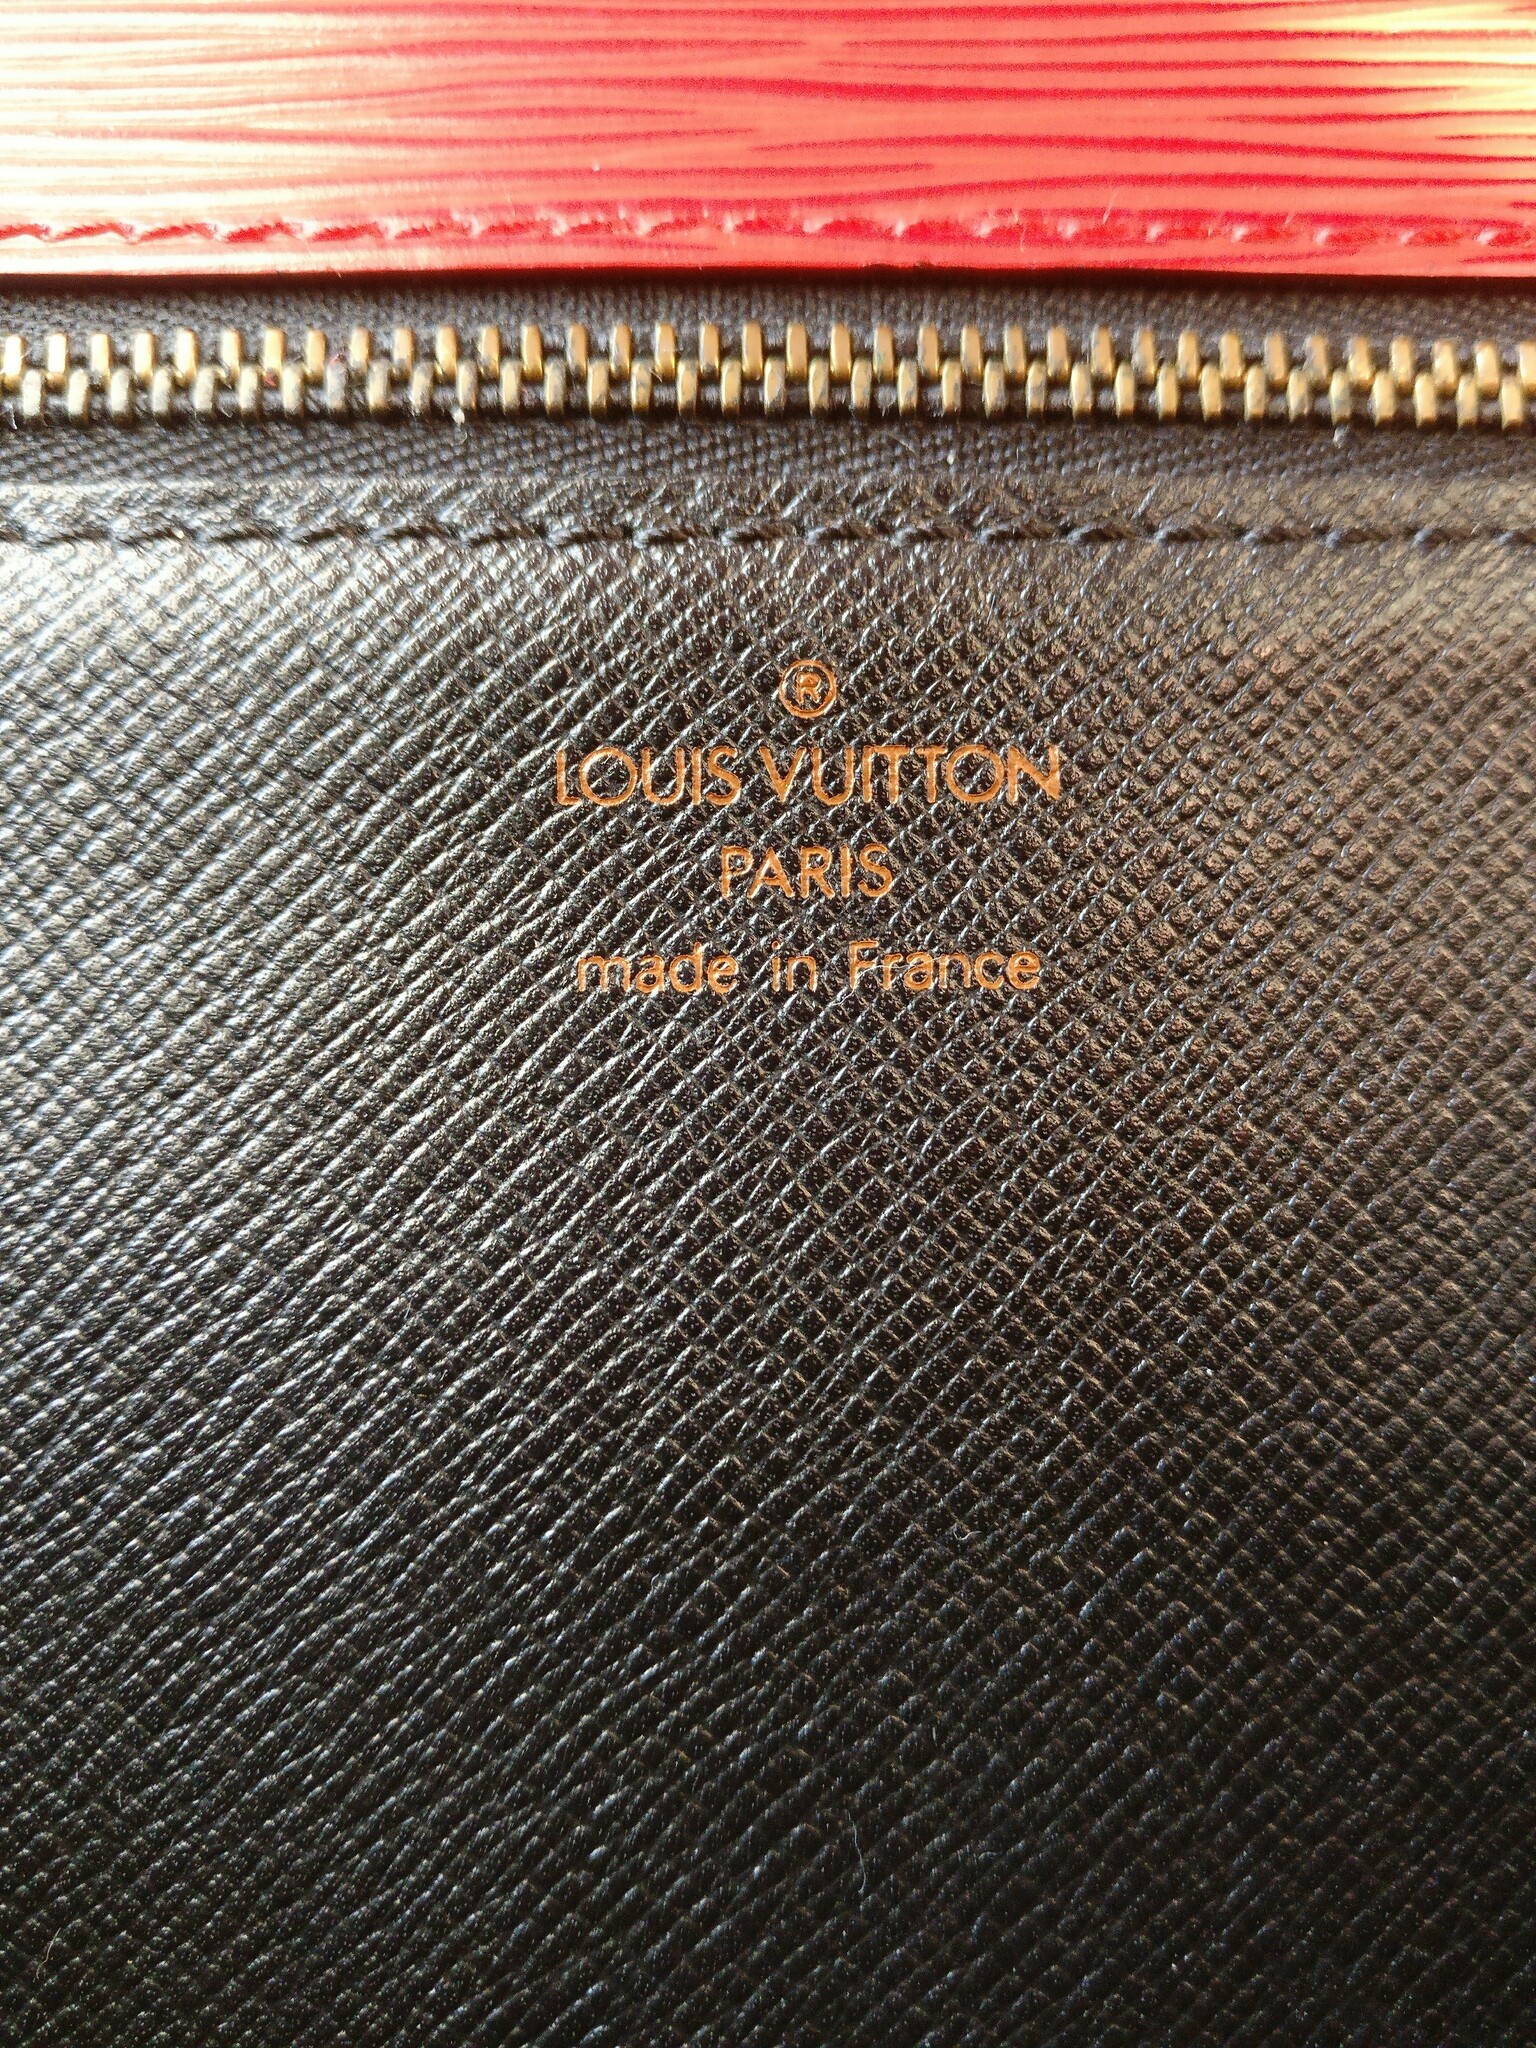 Louis Vuitton Monceau red